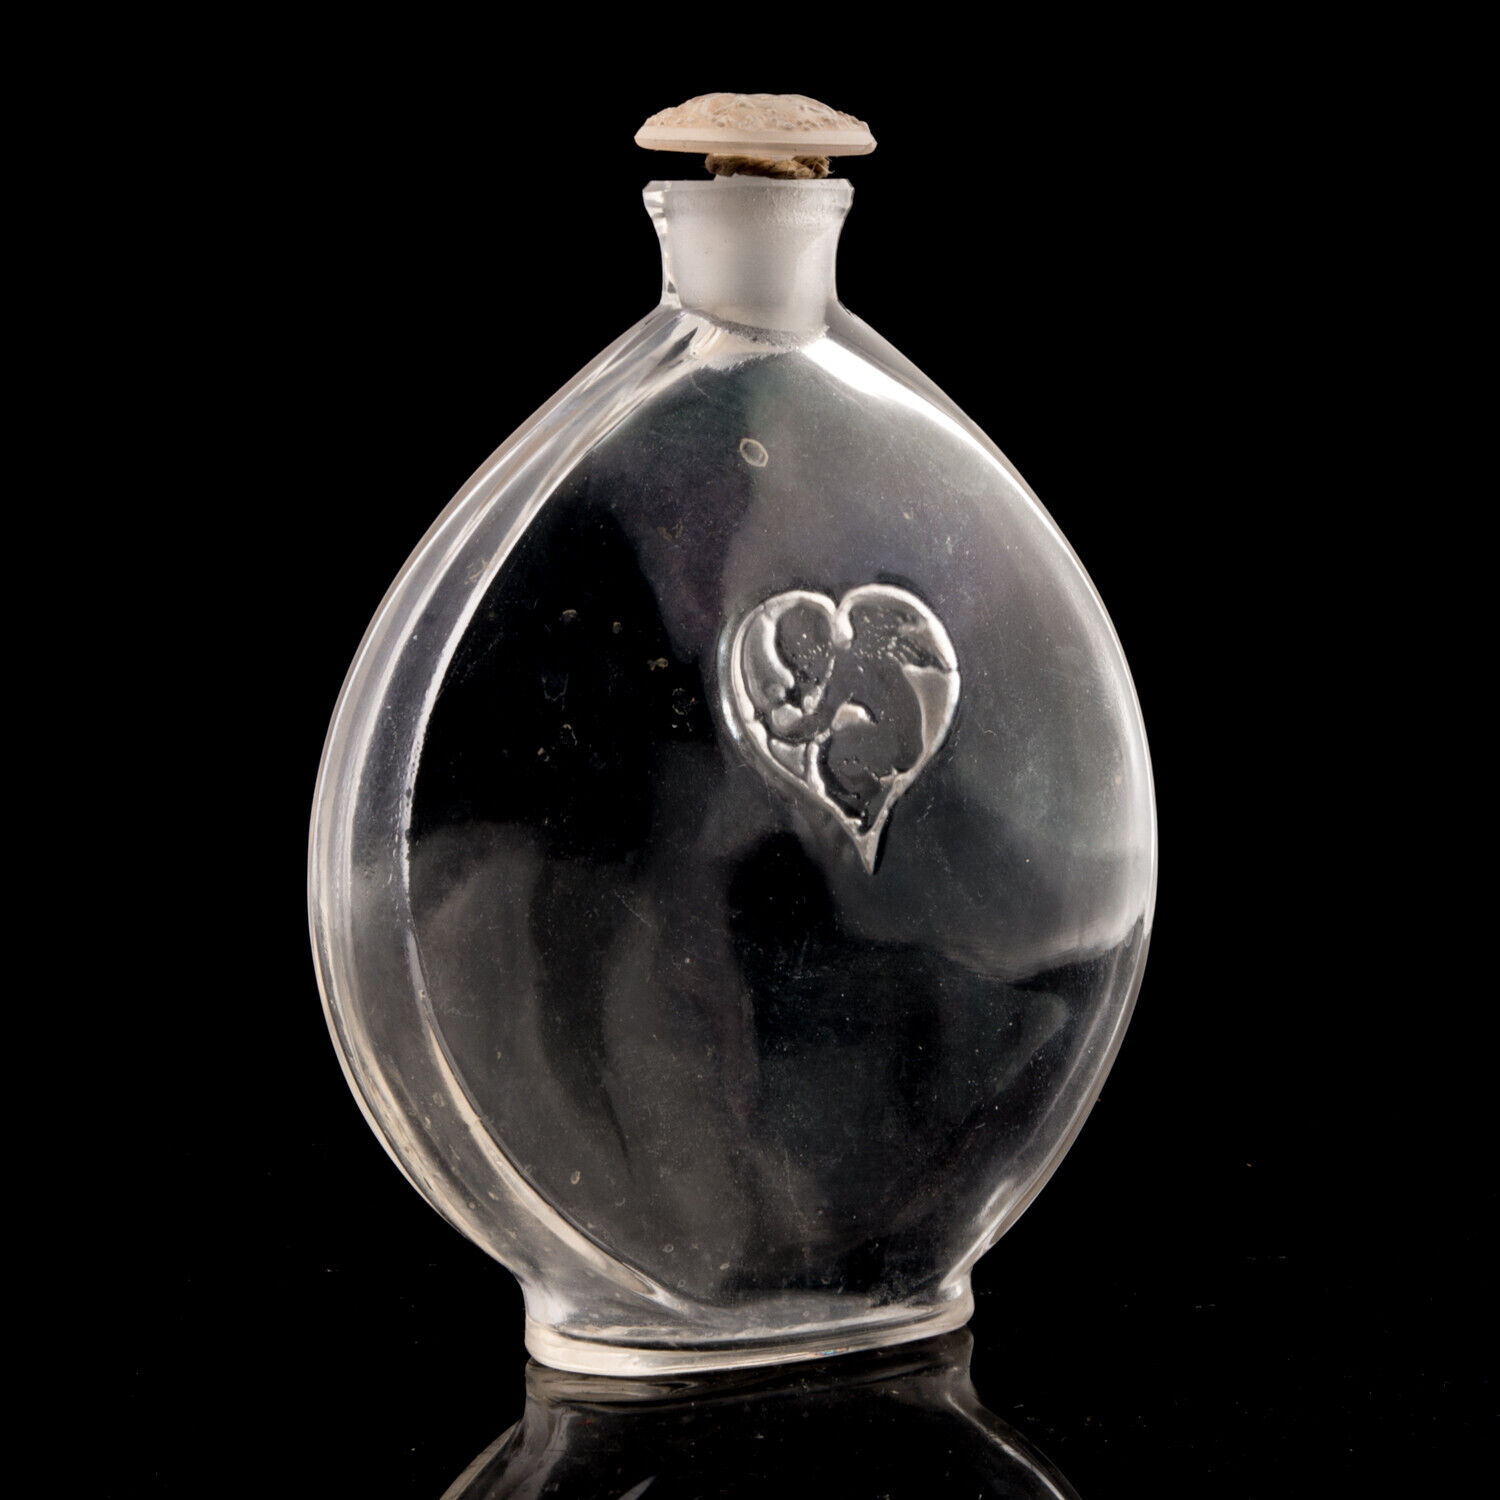 Rene R Lalique L'Amour Dans Le Coeur Vintage Perfume Bottle Pre-War c1920 Signed